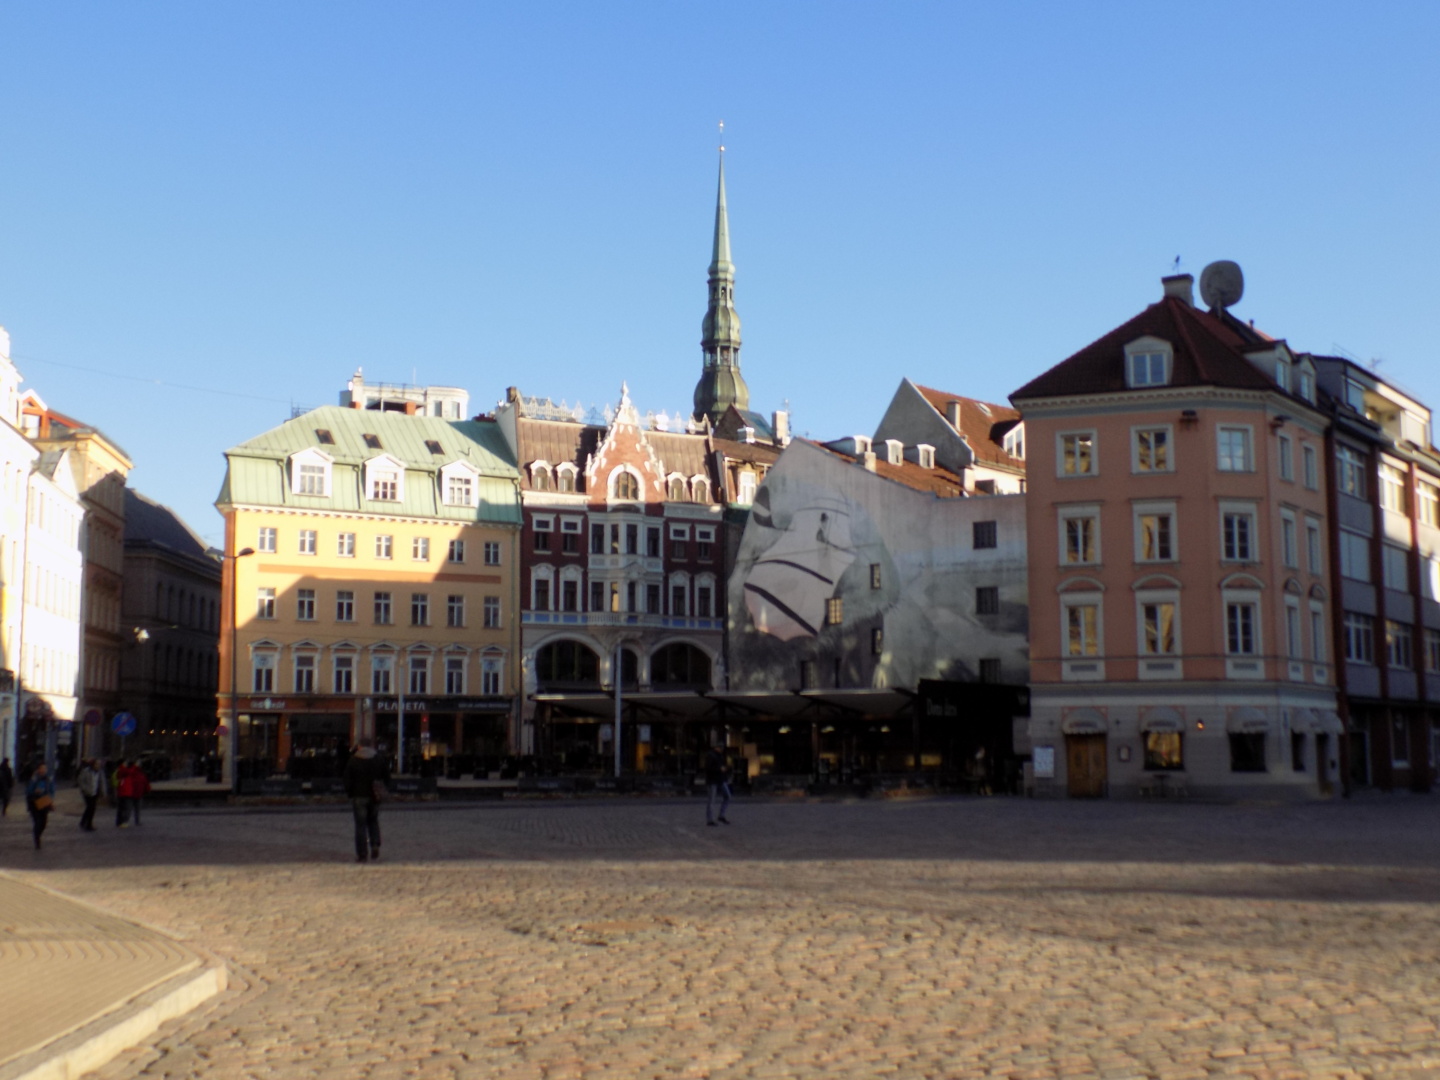 Europe | Day 2 in Riga, Latvia